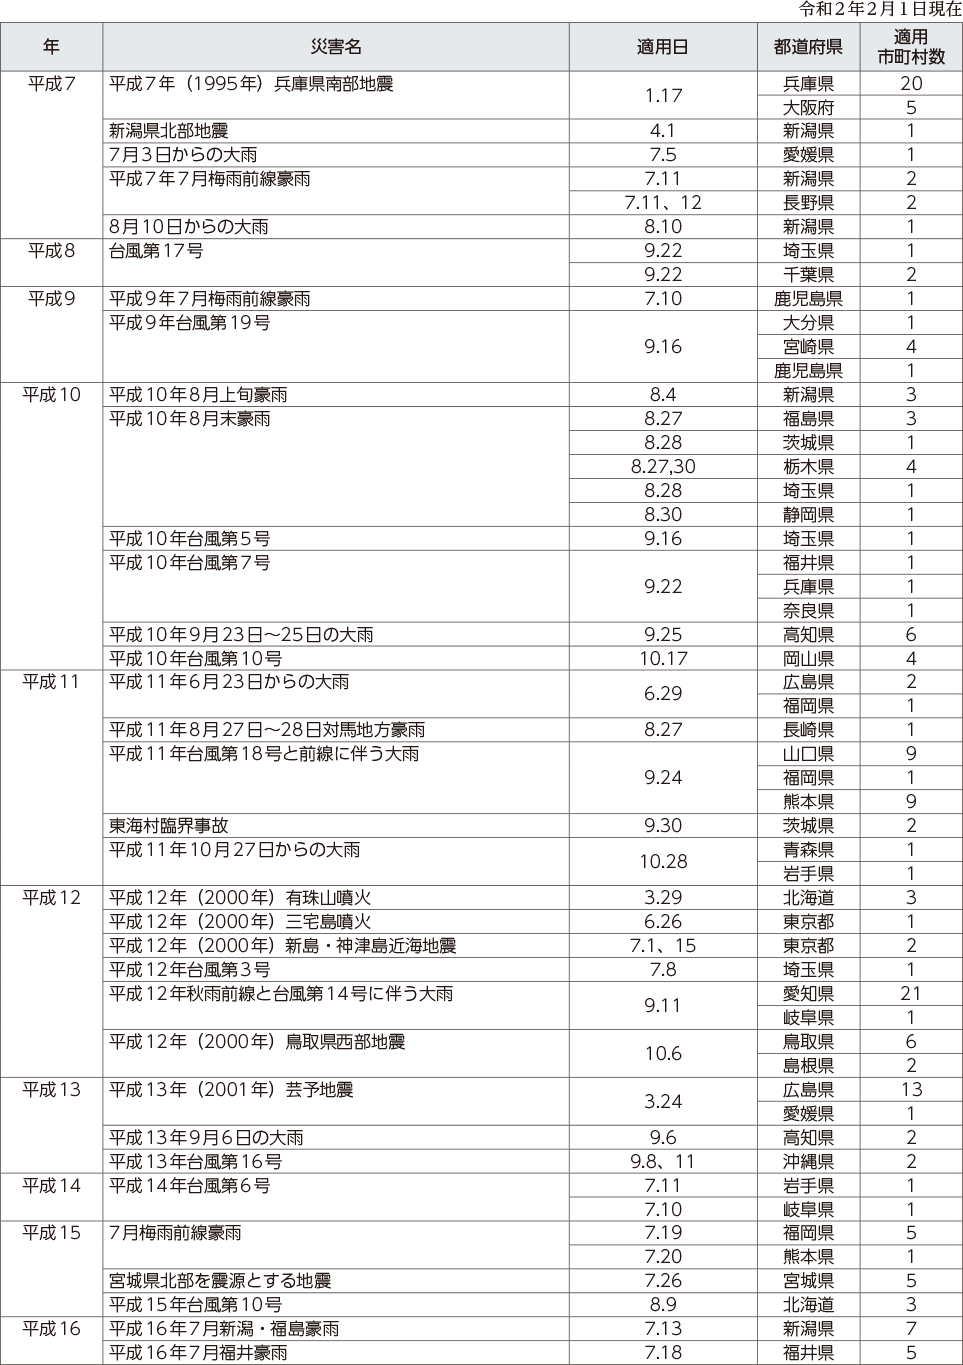 附属資料12　災害救助法の適用実績（阪神・淡路大震災以降）（1）